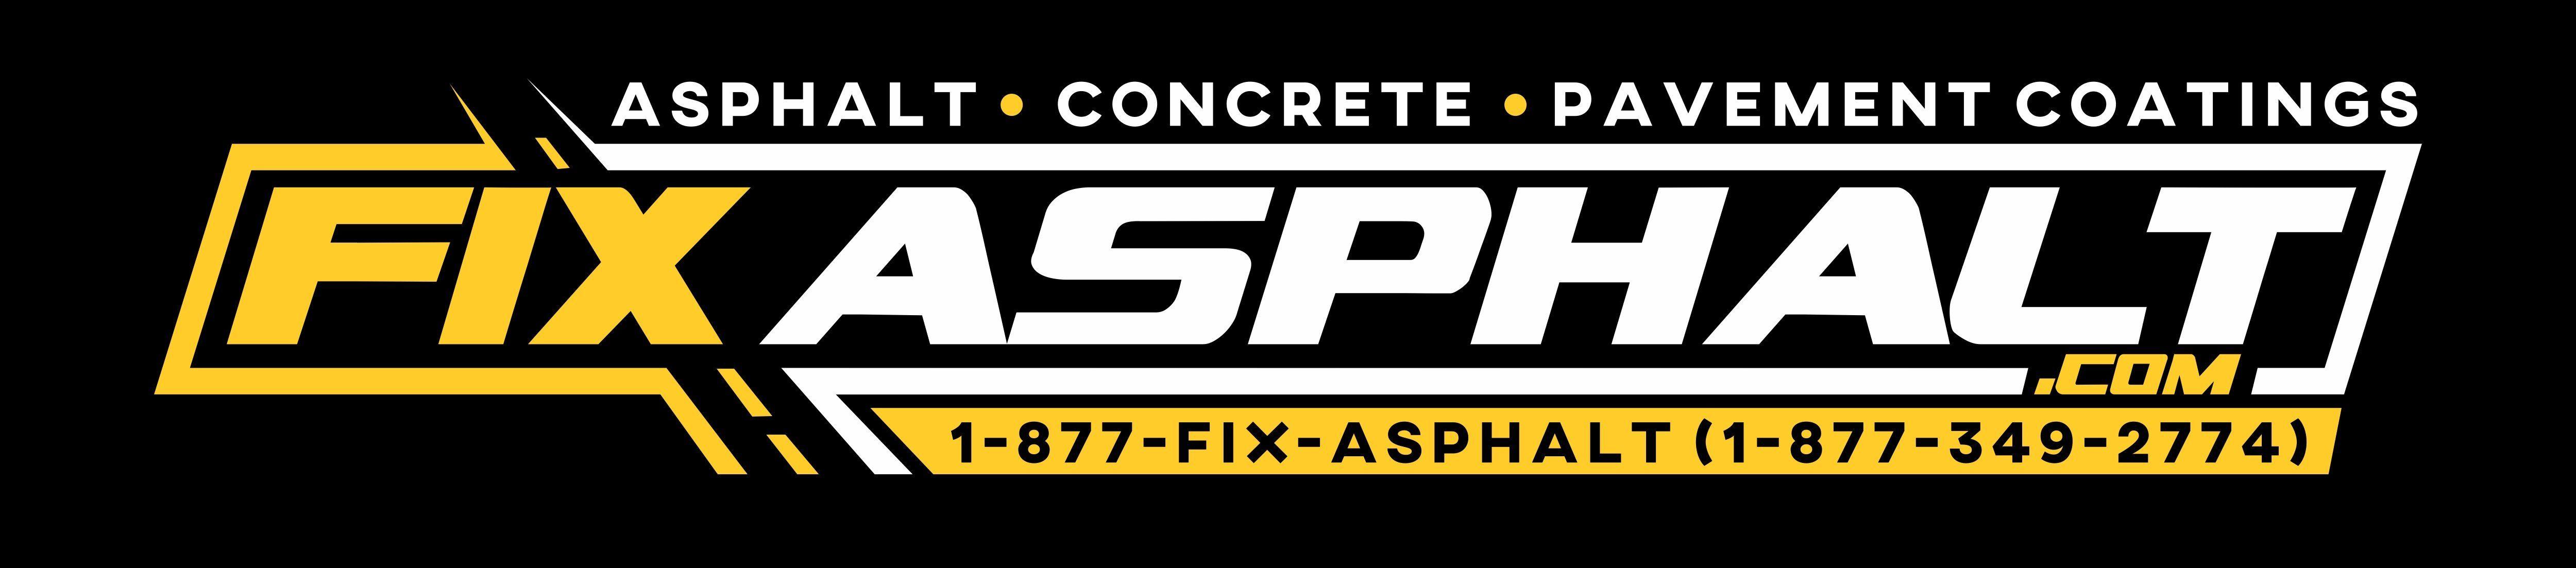 Asphalt Logo - Asphalt and Concrete services in NJ, PA, DE & MD